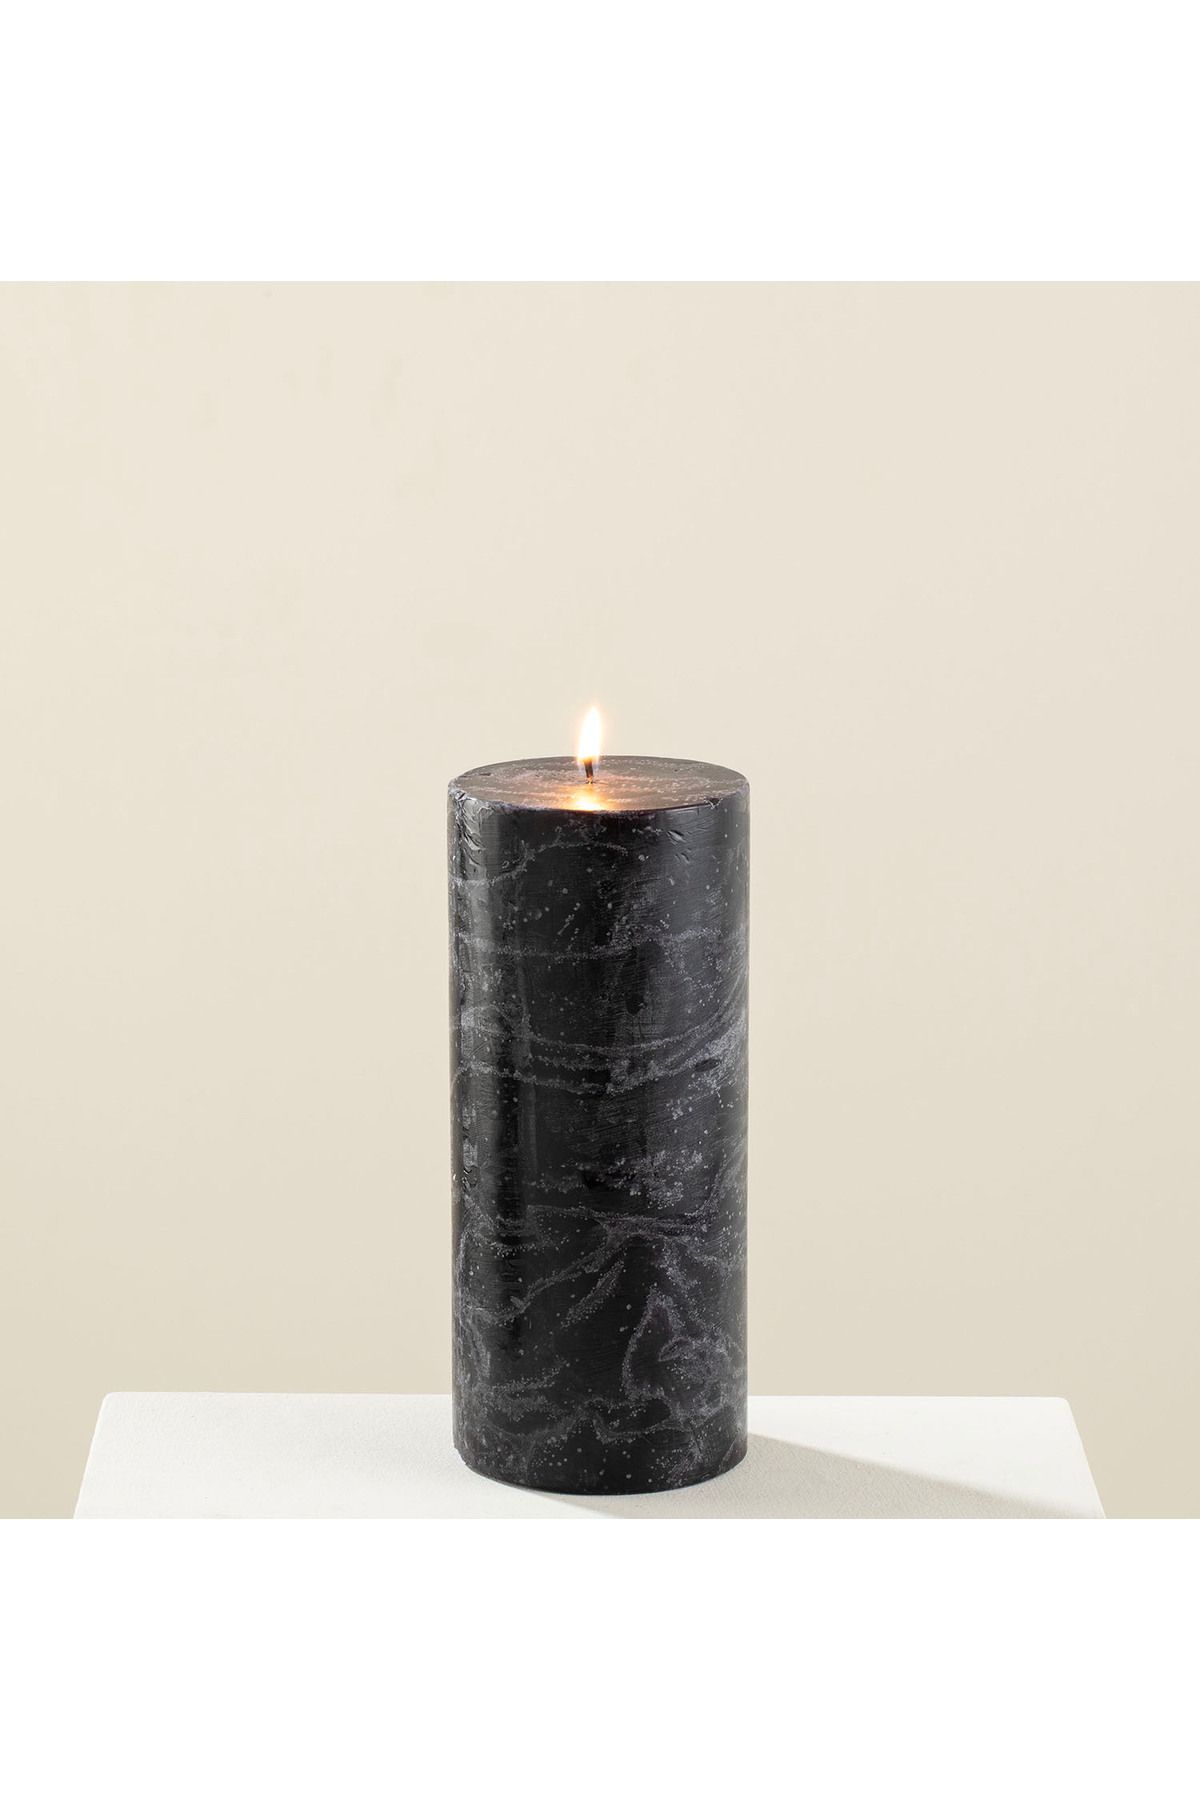 Chakra Marblo Sütun Mum 10 x 20 cm Siyah